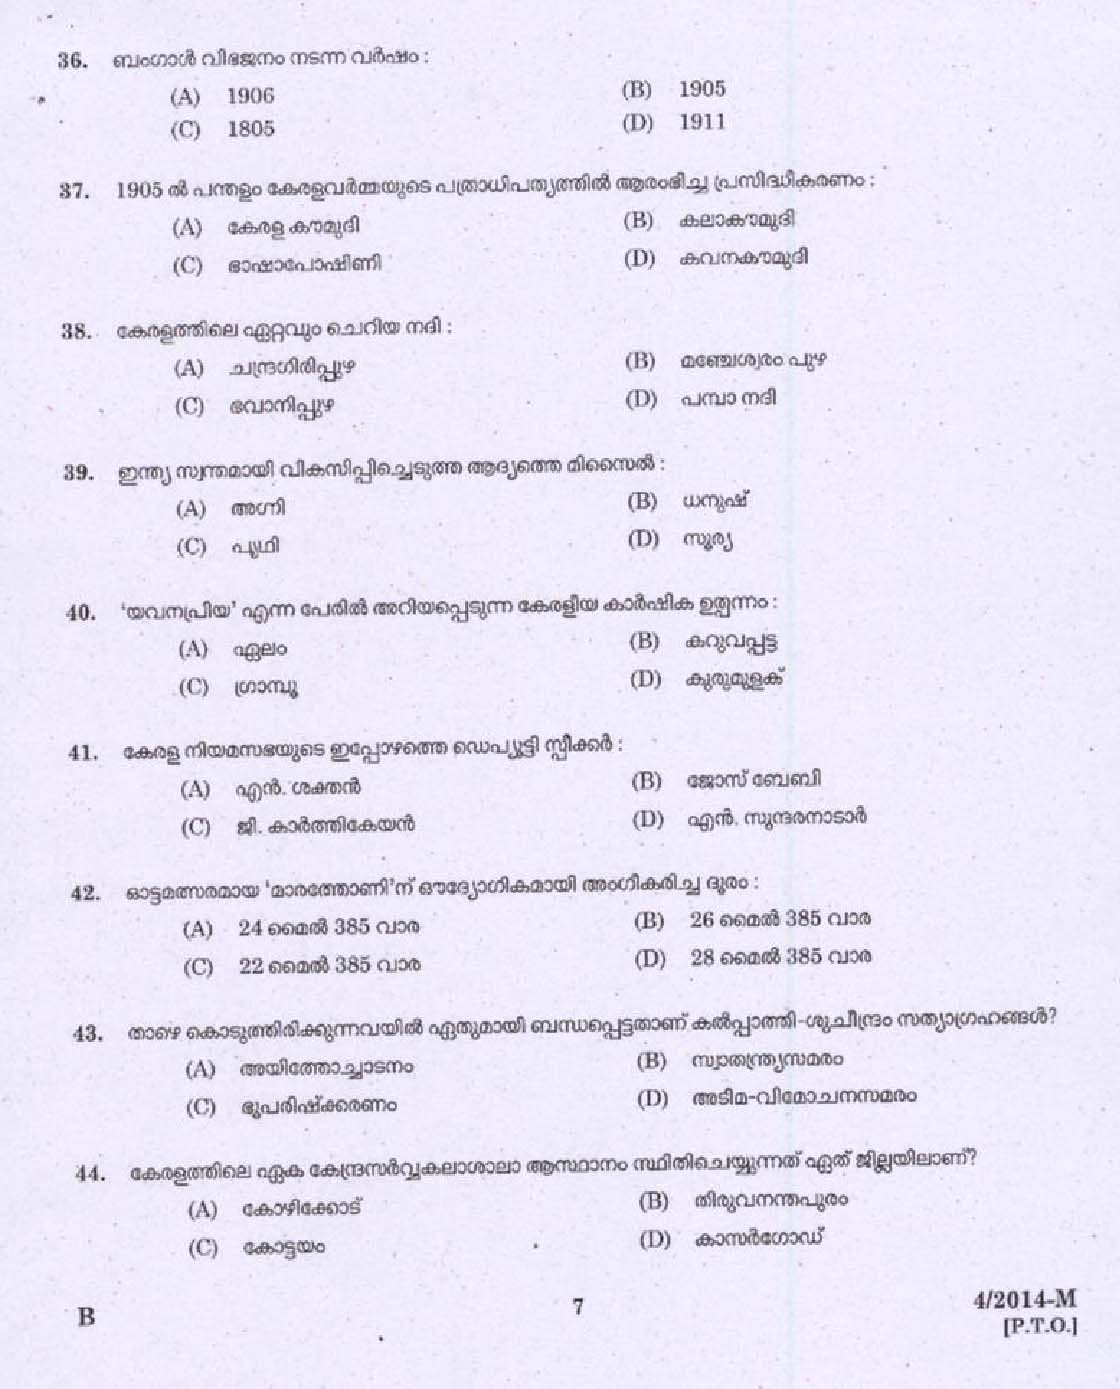 Kerala PSC Driver Grade II Exam 2014 Question Paper Code 042014 M 5